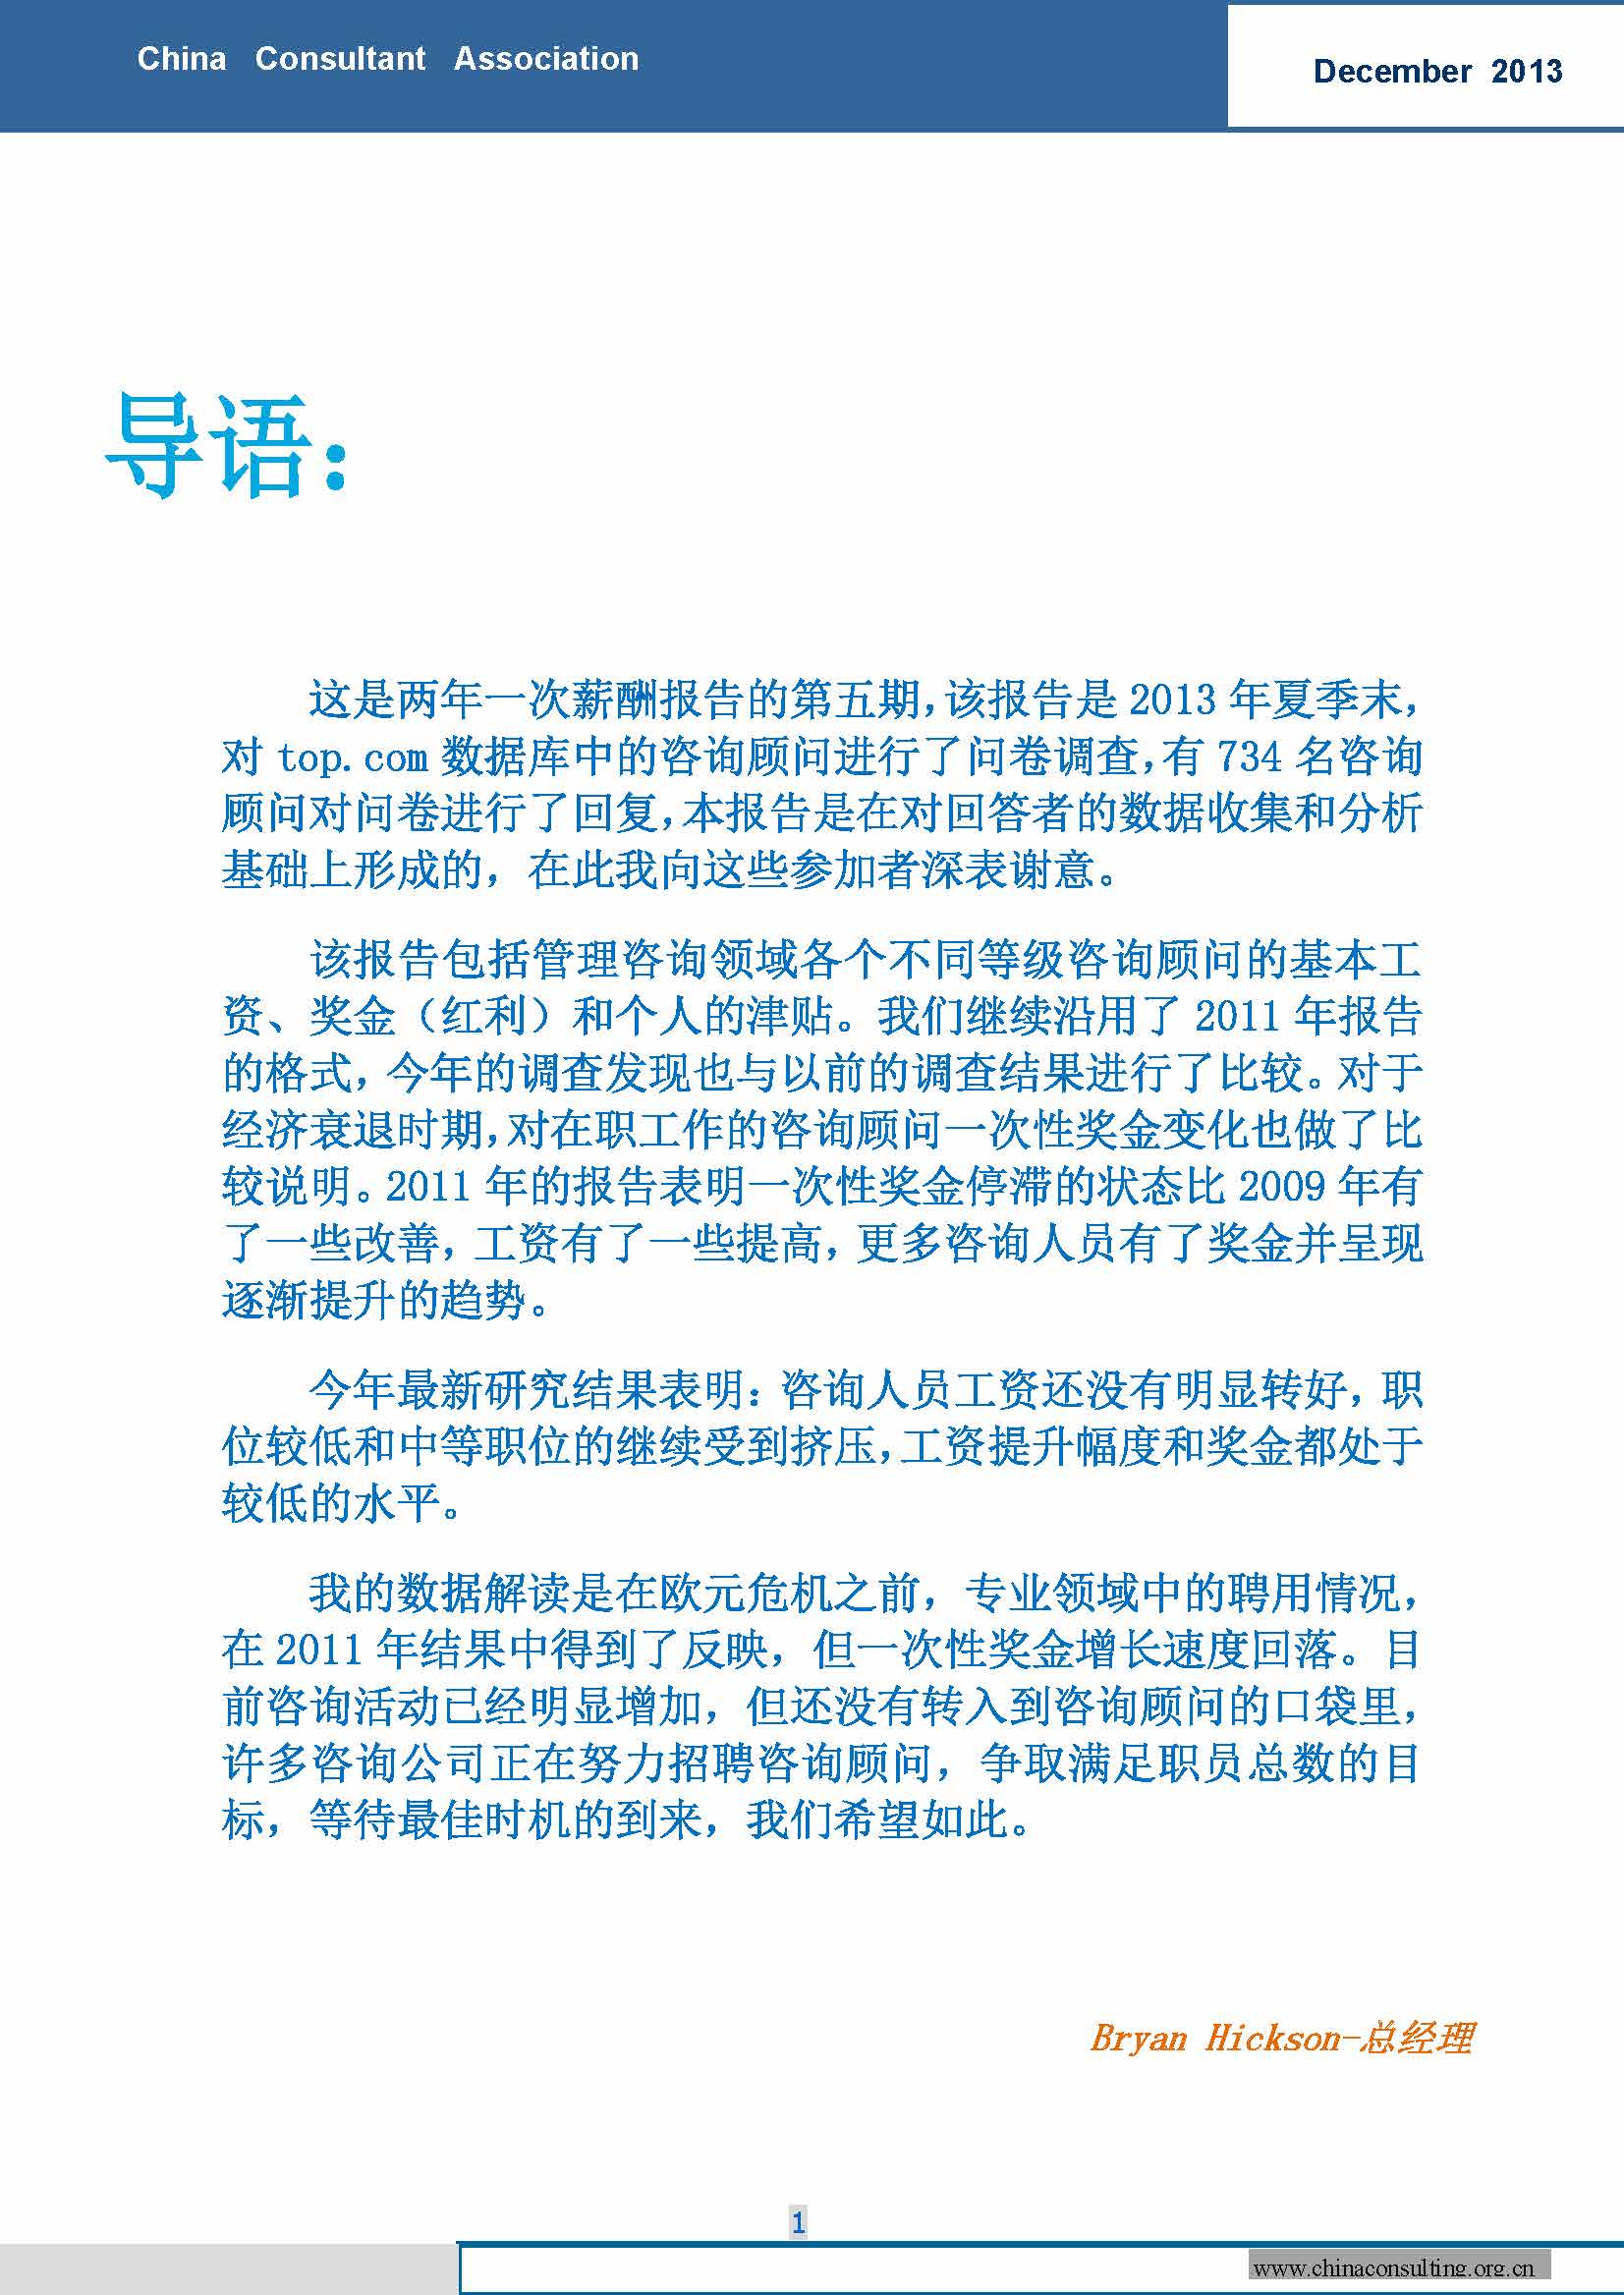 16中国科技咨询协会国际快讯（第十六期）_页面_03.jpg